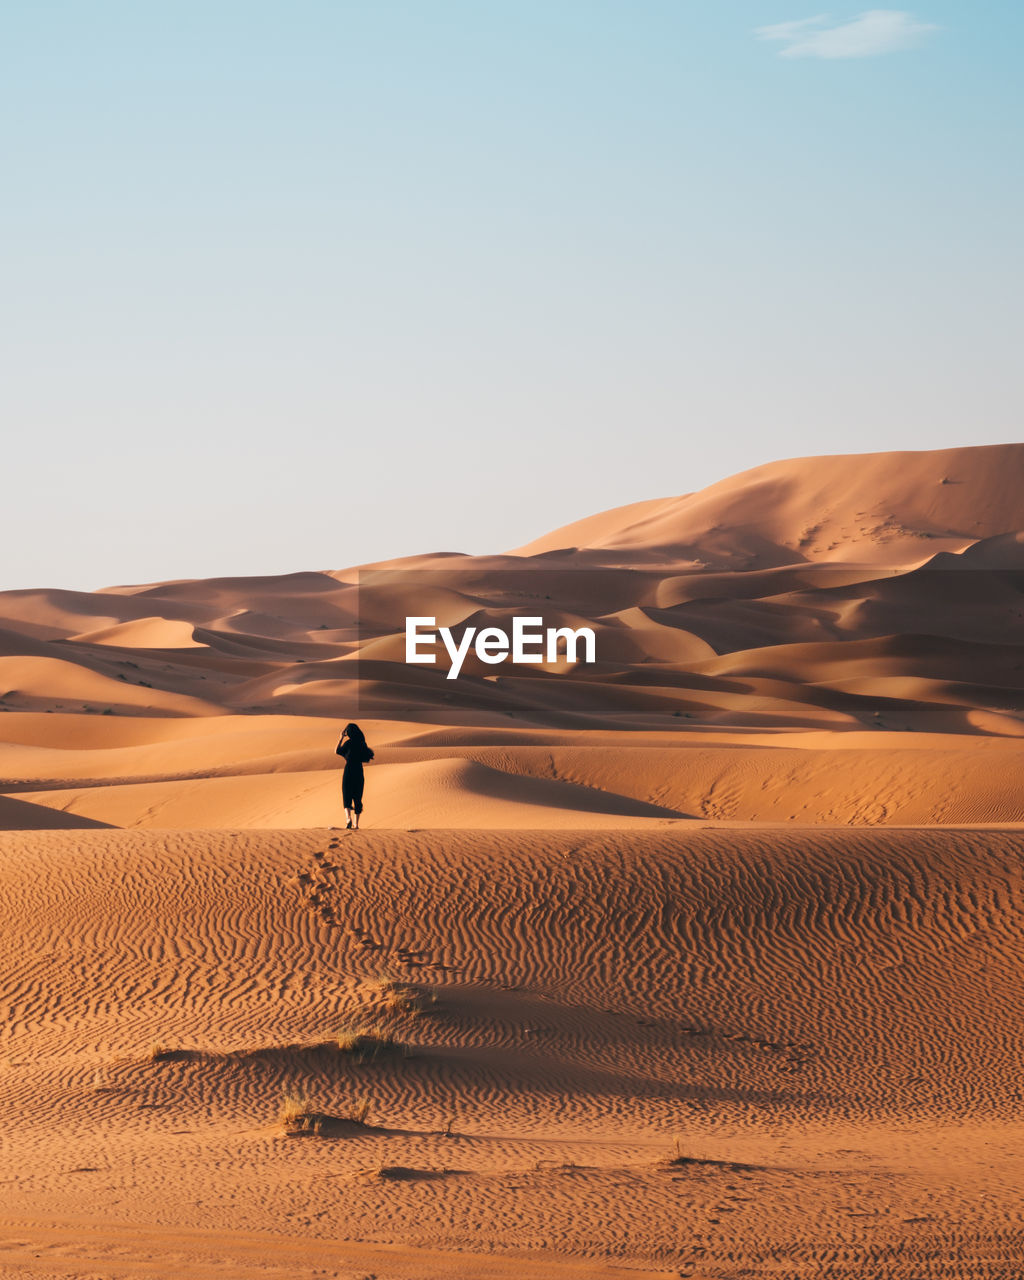 Woman on sand dune in desert against sky